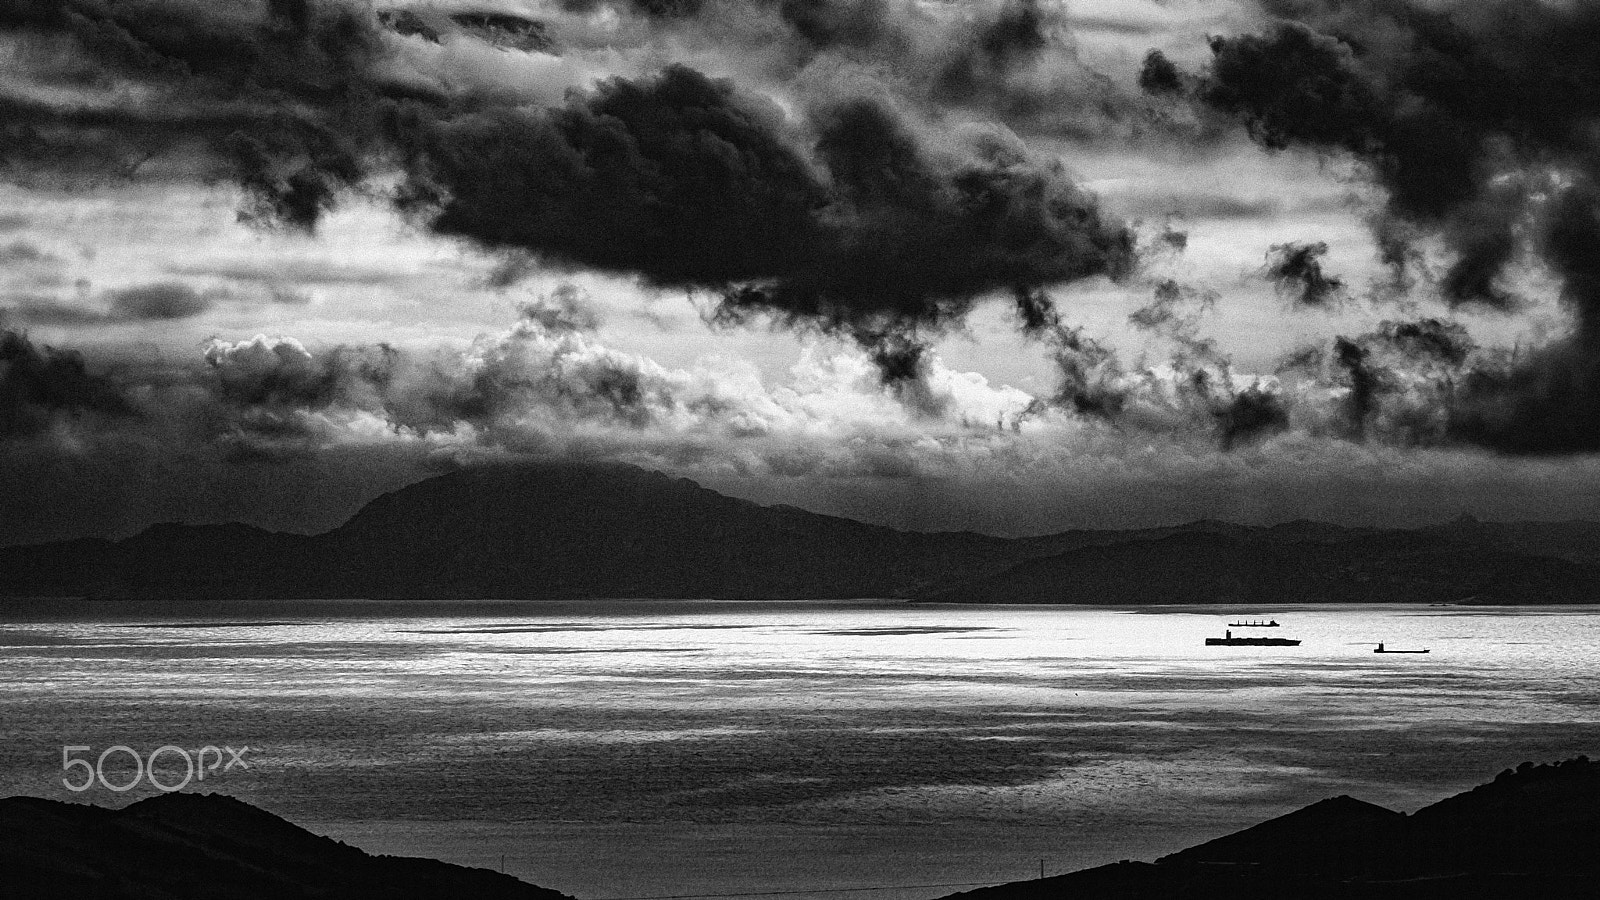 AF Zoom-Nikkor 35-70mm f/3.3-4.5 N sample photo. Strait of gibraltar #53 photography